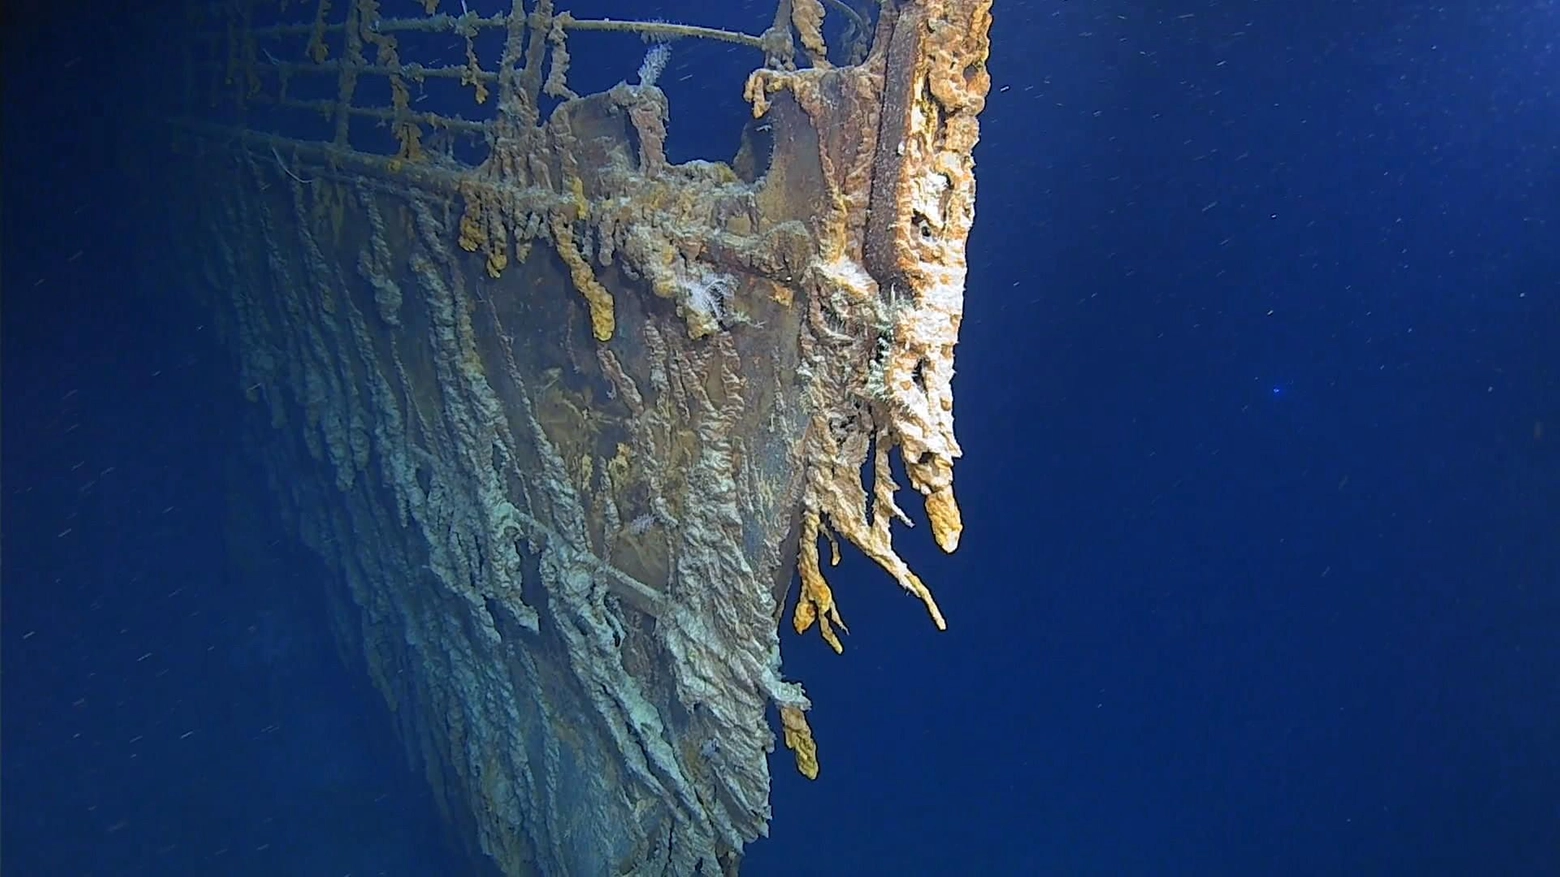 Una delle immagini del Titanic filmate in questi giorni